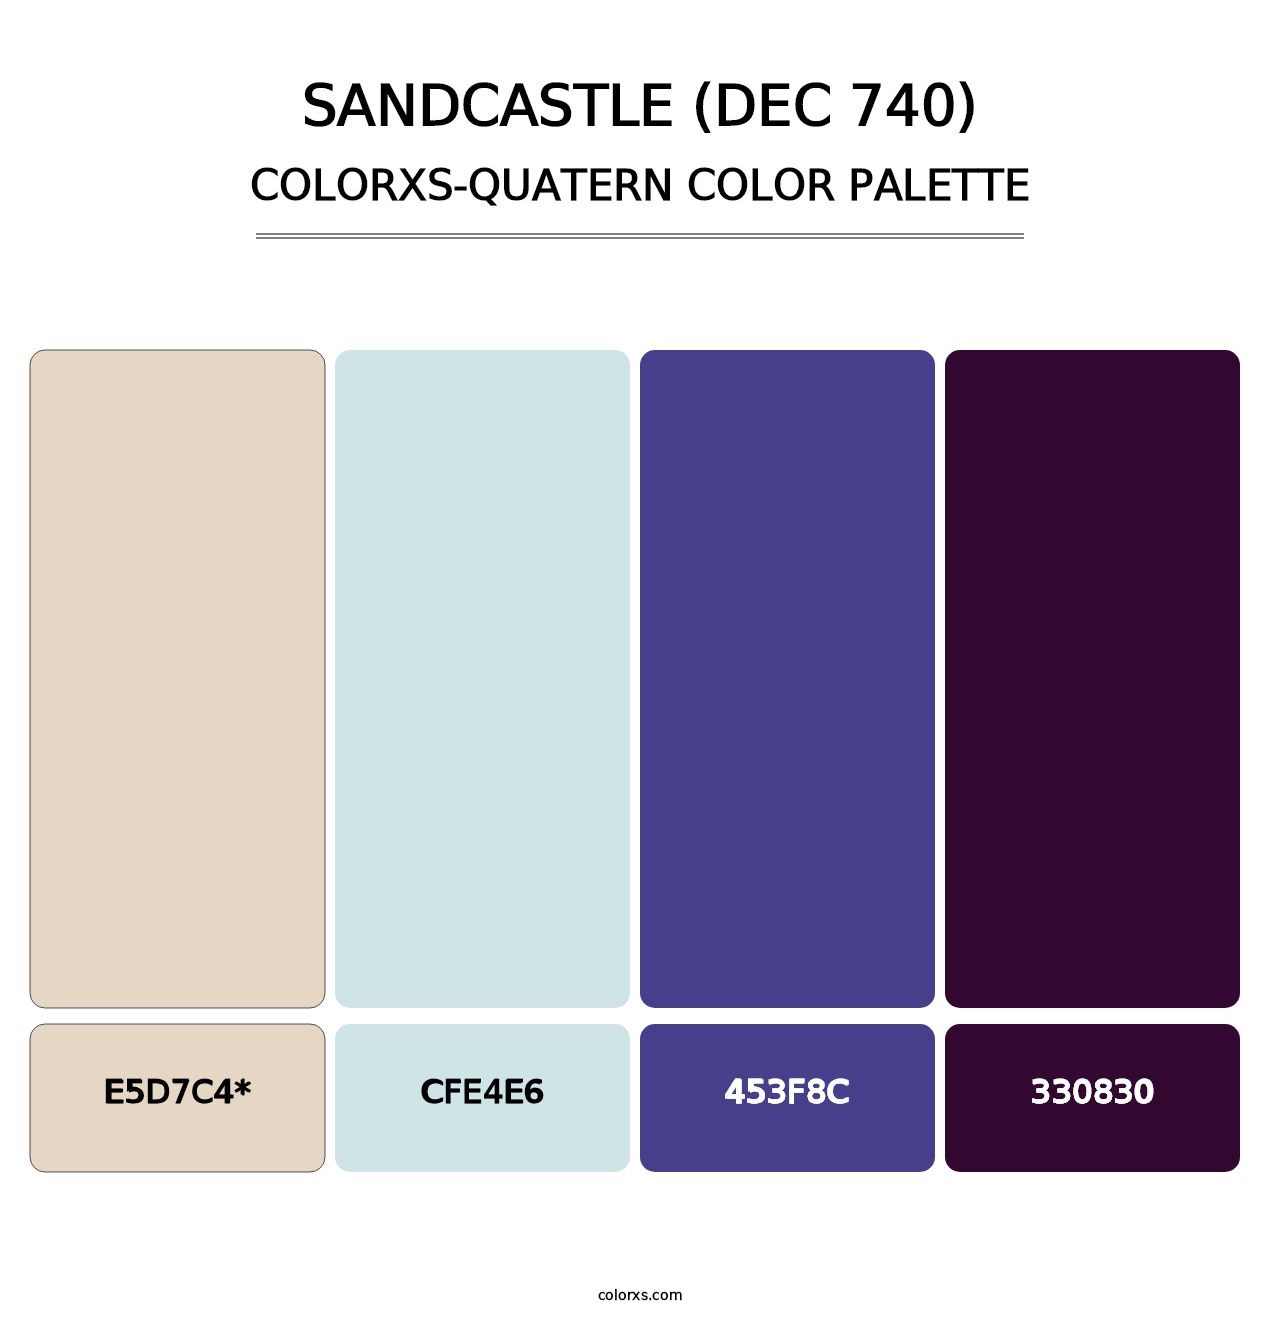 Sandcastle (DEC 740) - Colorxs Quatern Palette